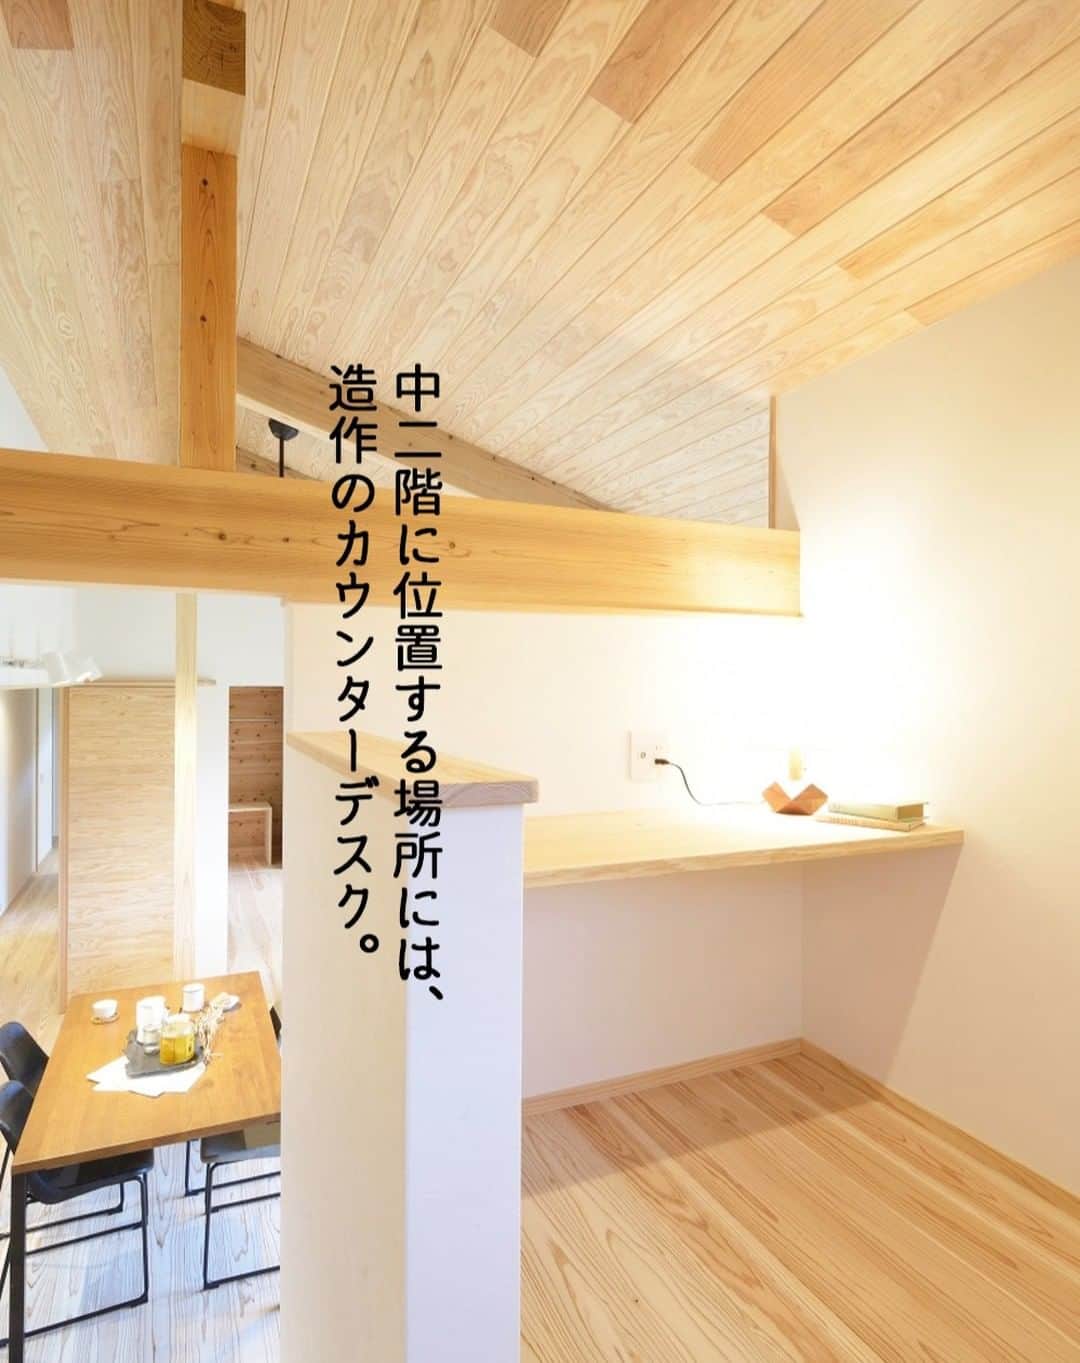 Yasuhiro Arimuraのインスタグラム：「中二階に位置する場所に設置した、造作のカウンターデスク。 リモートワークはもちろんのこと、自分だけのお家時間を過ごせます。 屋根裏みたいで、ちょっと遊び心をくすぐられそう。完全な個室ではないので、コミュニケーションもばっちりです。  more photos... 👉 @yasuhiro.arimura #光と風 #sumais #リビング #明るいリビング #注文住宅 #家づくり #平屋のお家 #造作建具 #ウッドデッキ #マイホーム #マイホーム計画 #木の家 #住まい #新築 #オーダーメイド住宅 #鹿児島 #工務店 #工務店がつくる家 #工務店だからつくれる家 #設計事務所 #子育て #自然素材 #賃挽き製材 #デザイン #暮らし #暮らしを楽しむ #シンプルな暮らし #丁寧な暮らし #田舎暮らし #instahouse」